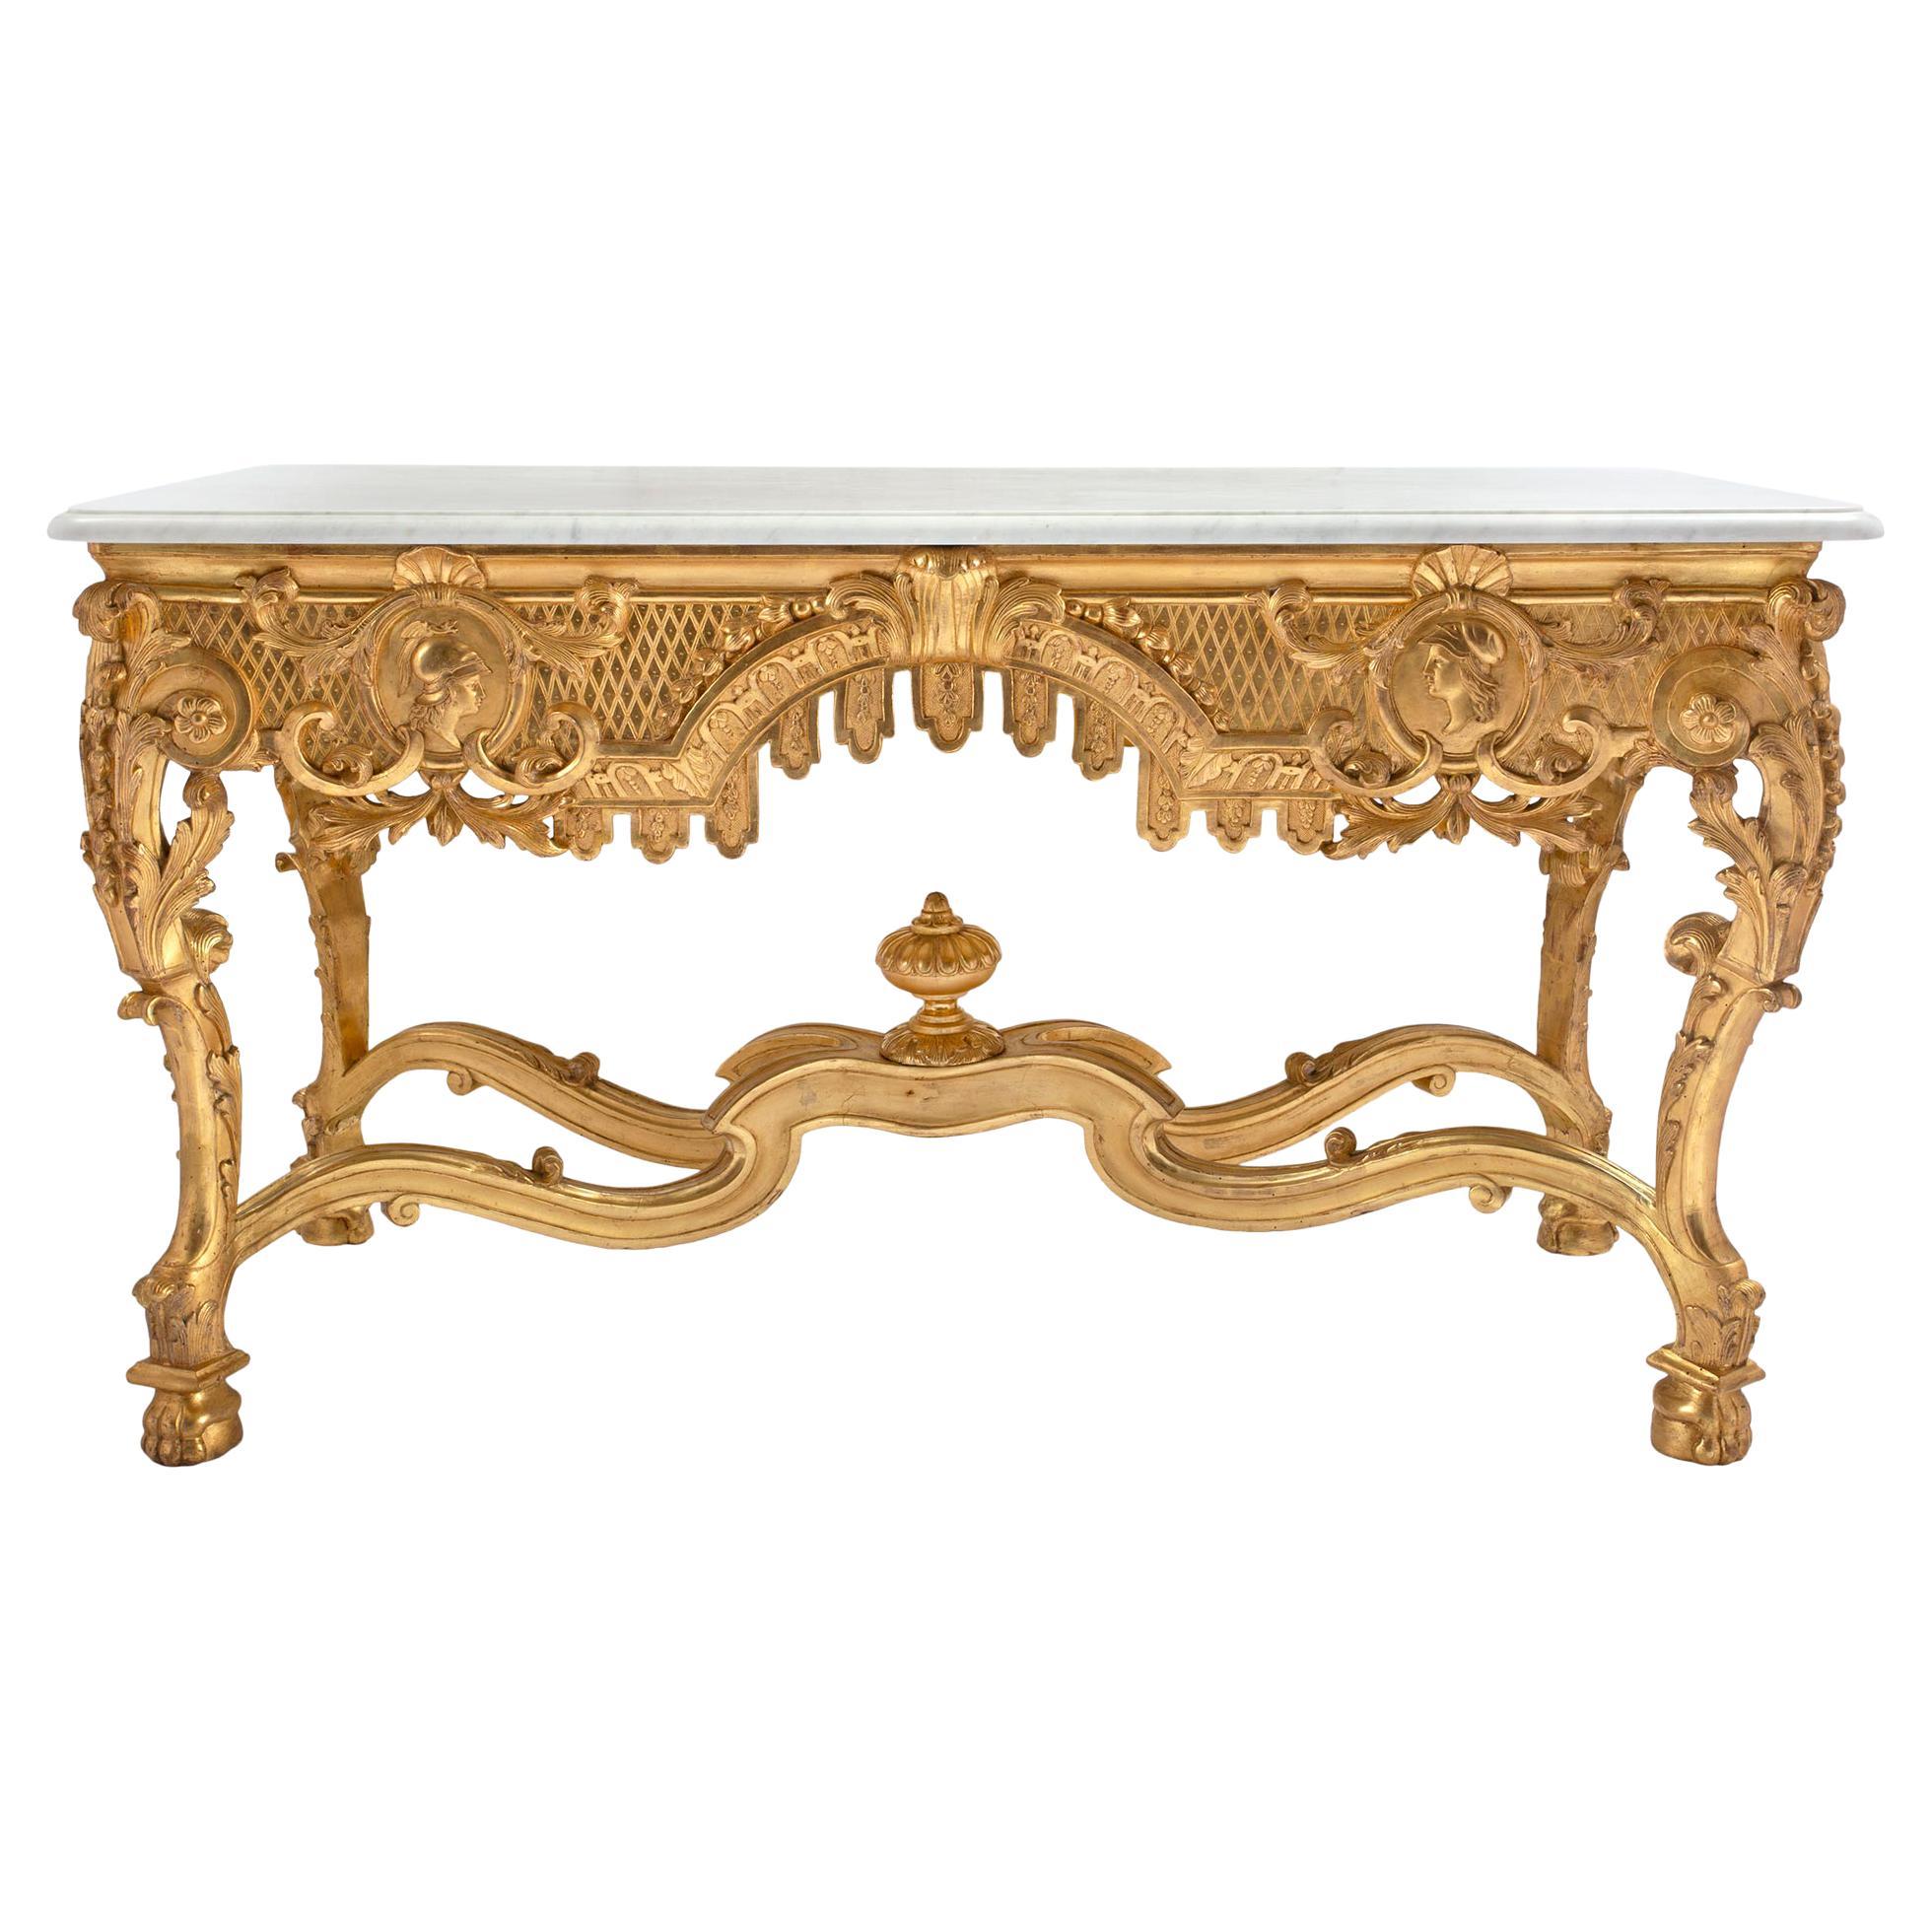 Table centrale de style Régence française du 19ème siècle en bois doré et marbre de Carrare